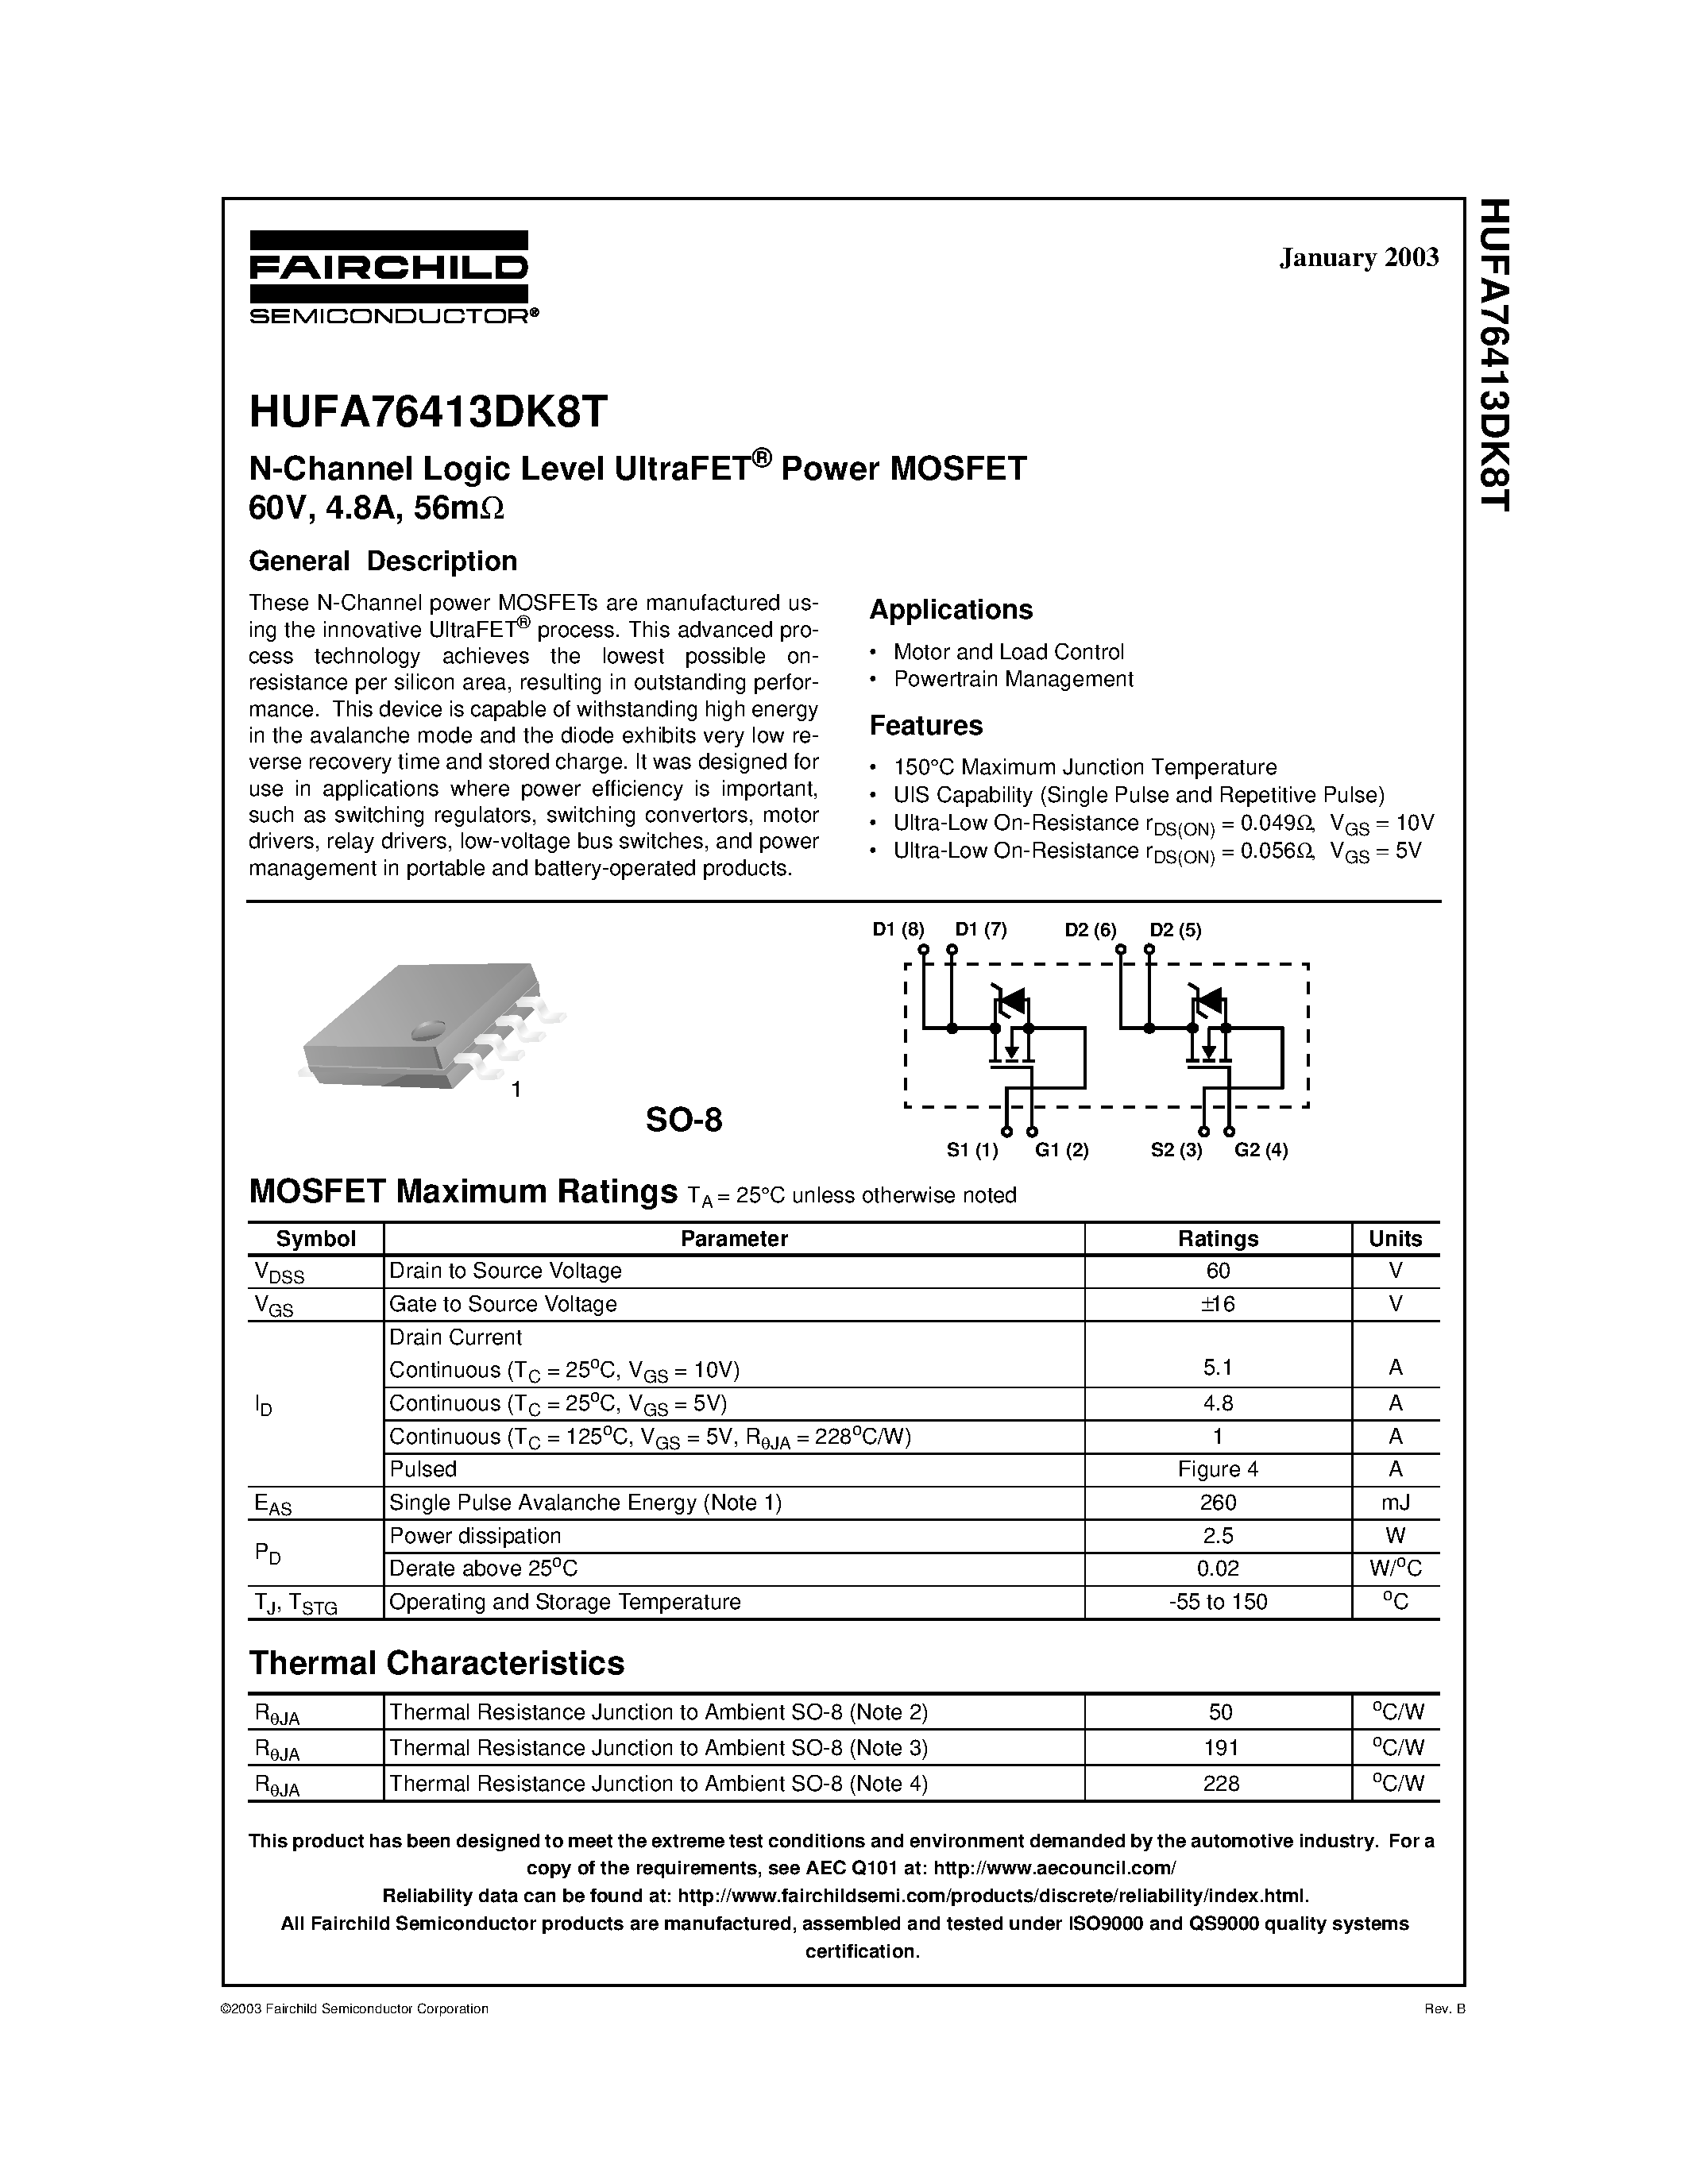 Даташит HUFA76413DK8T - N-Channel Logic Level UltraFET Power MOSFET 60V/ 4.8A/ 56m страница 1